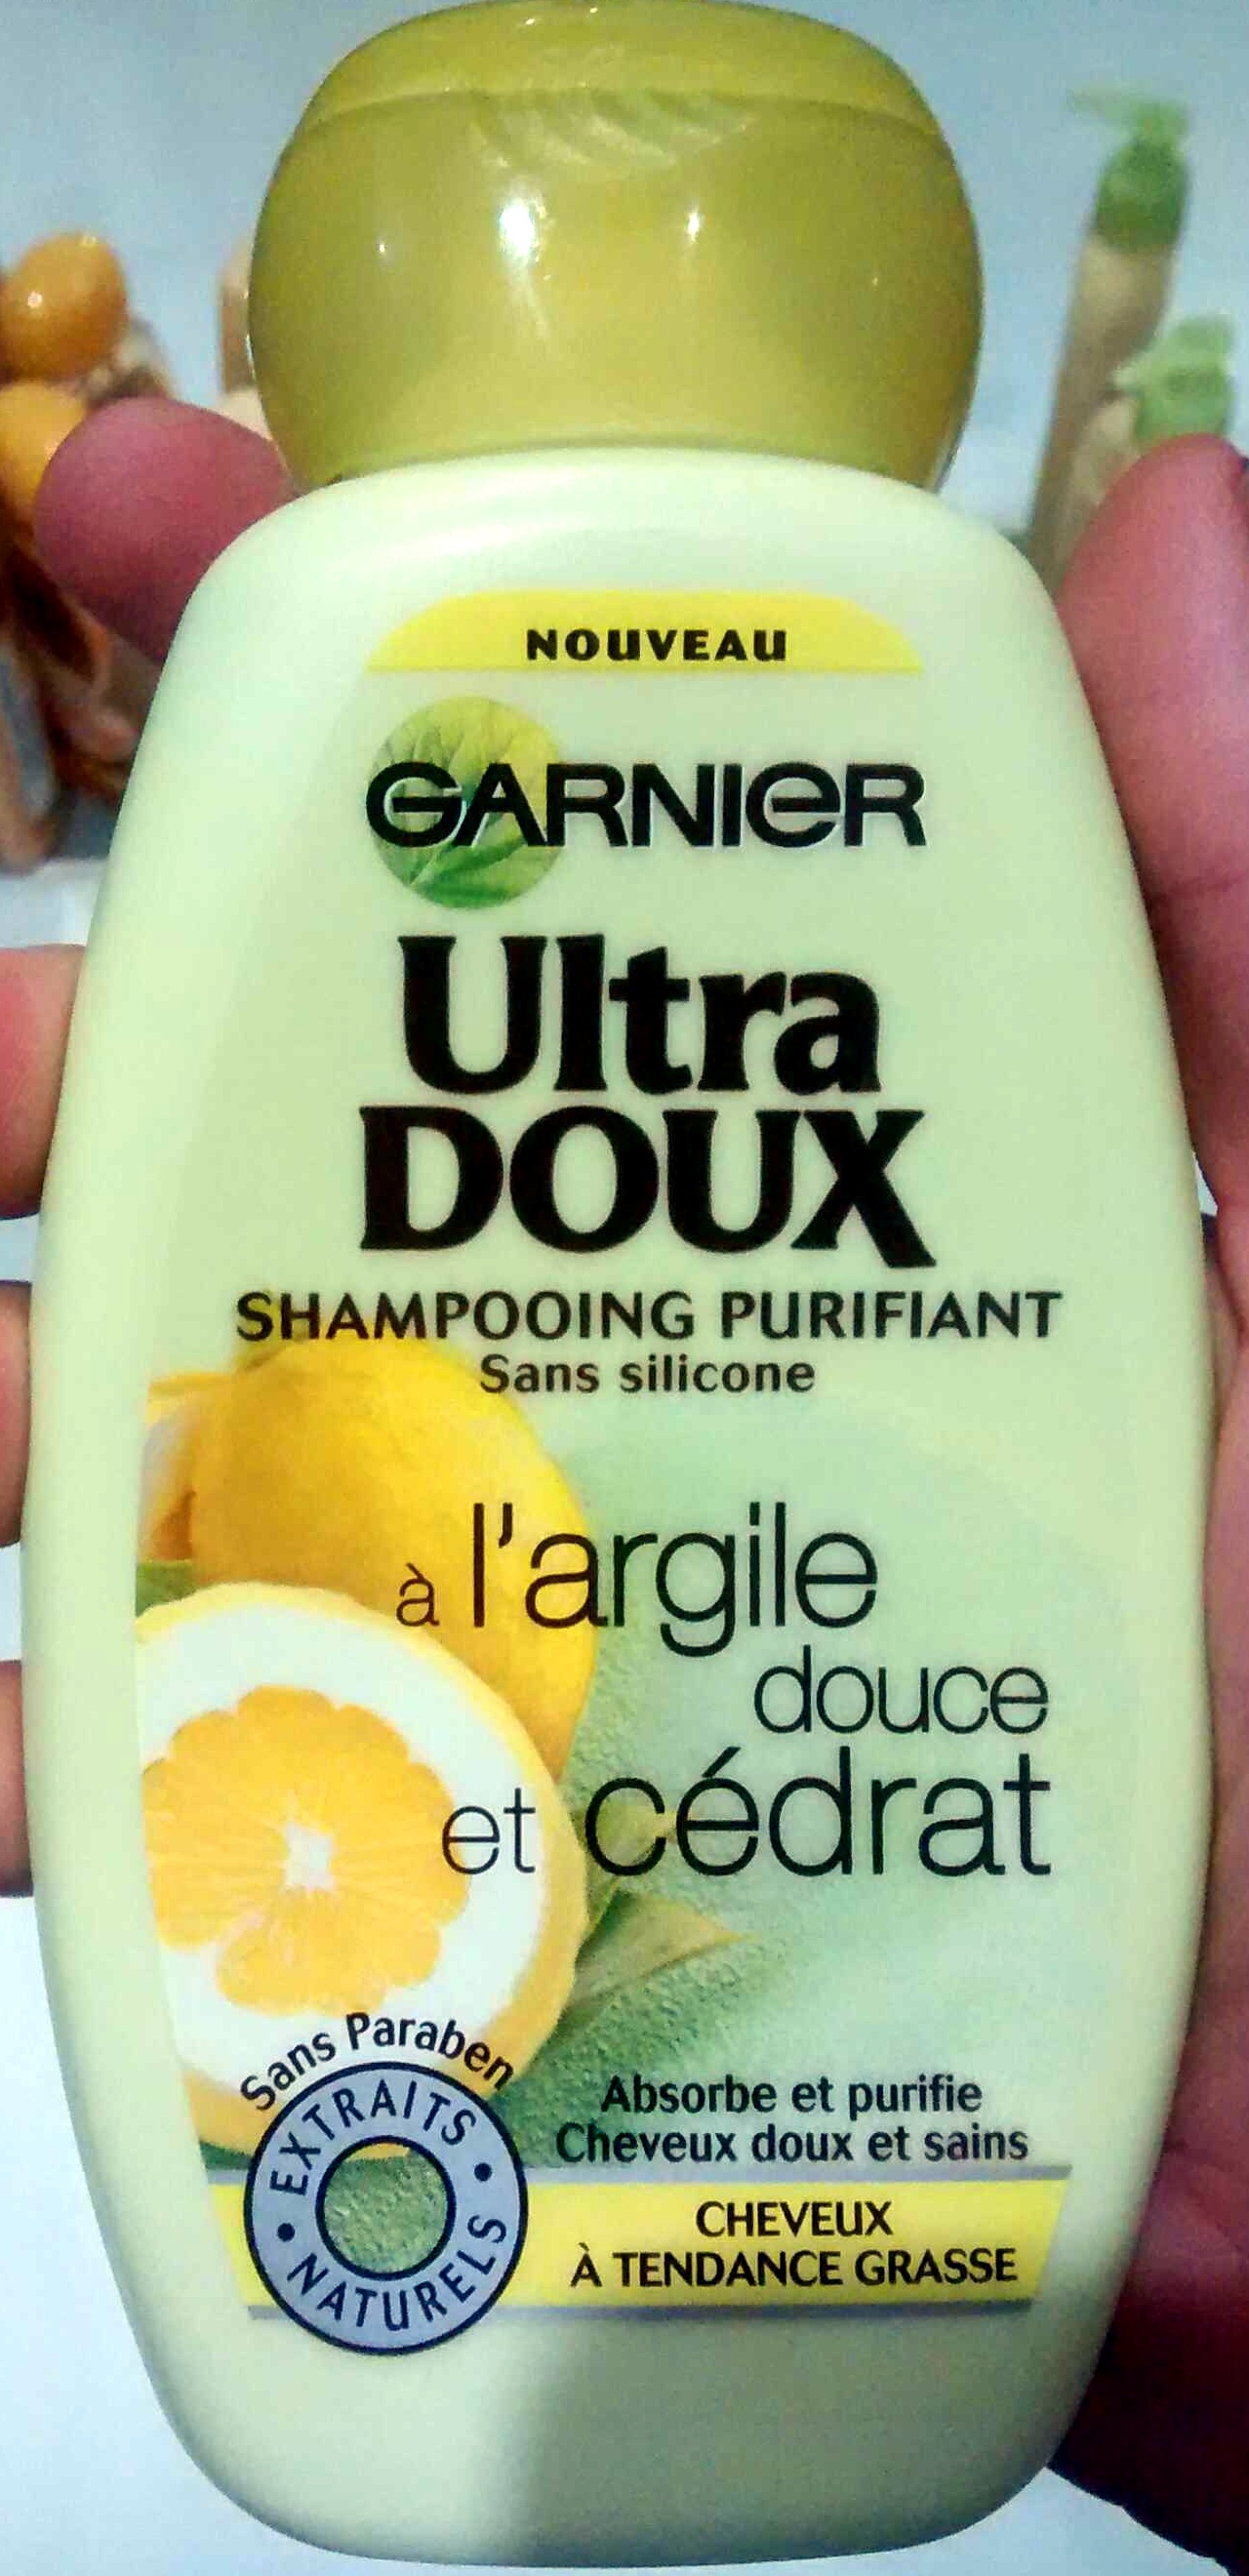 Shampooing purifiant sans silicone à l'argile douce et cédrat - Produit - fr